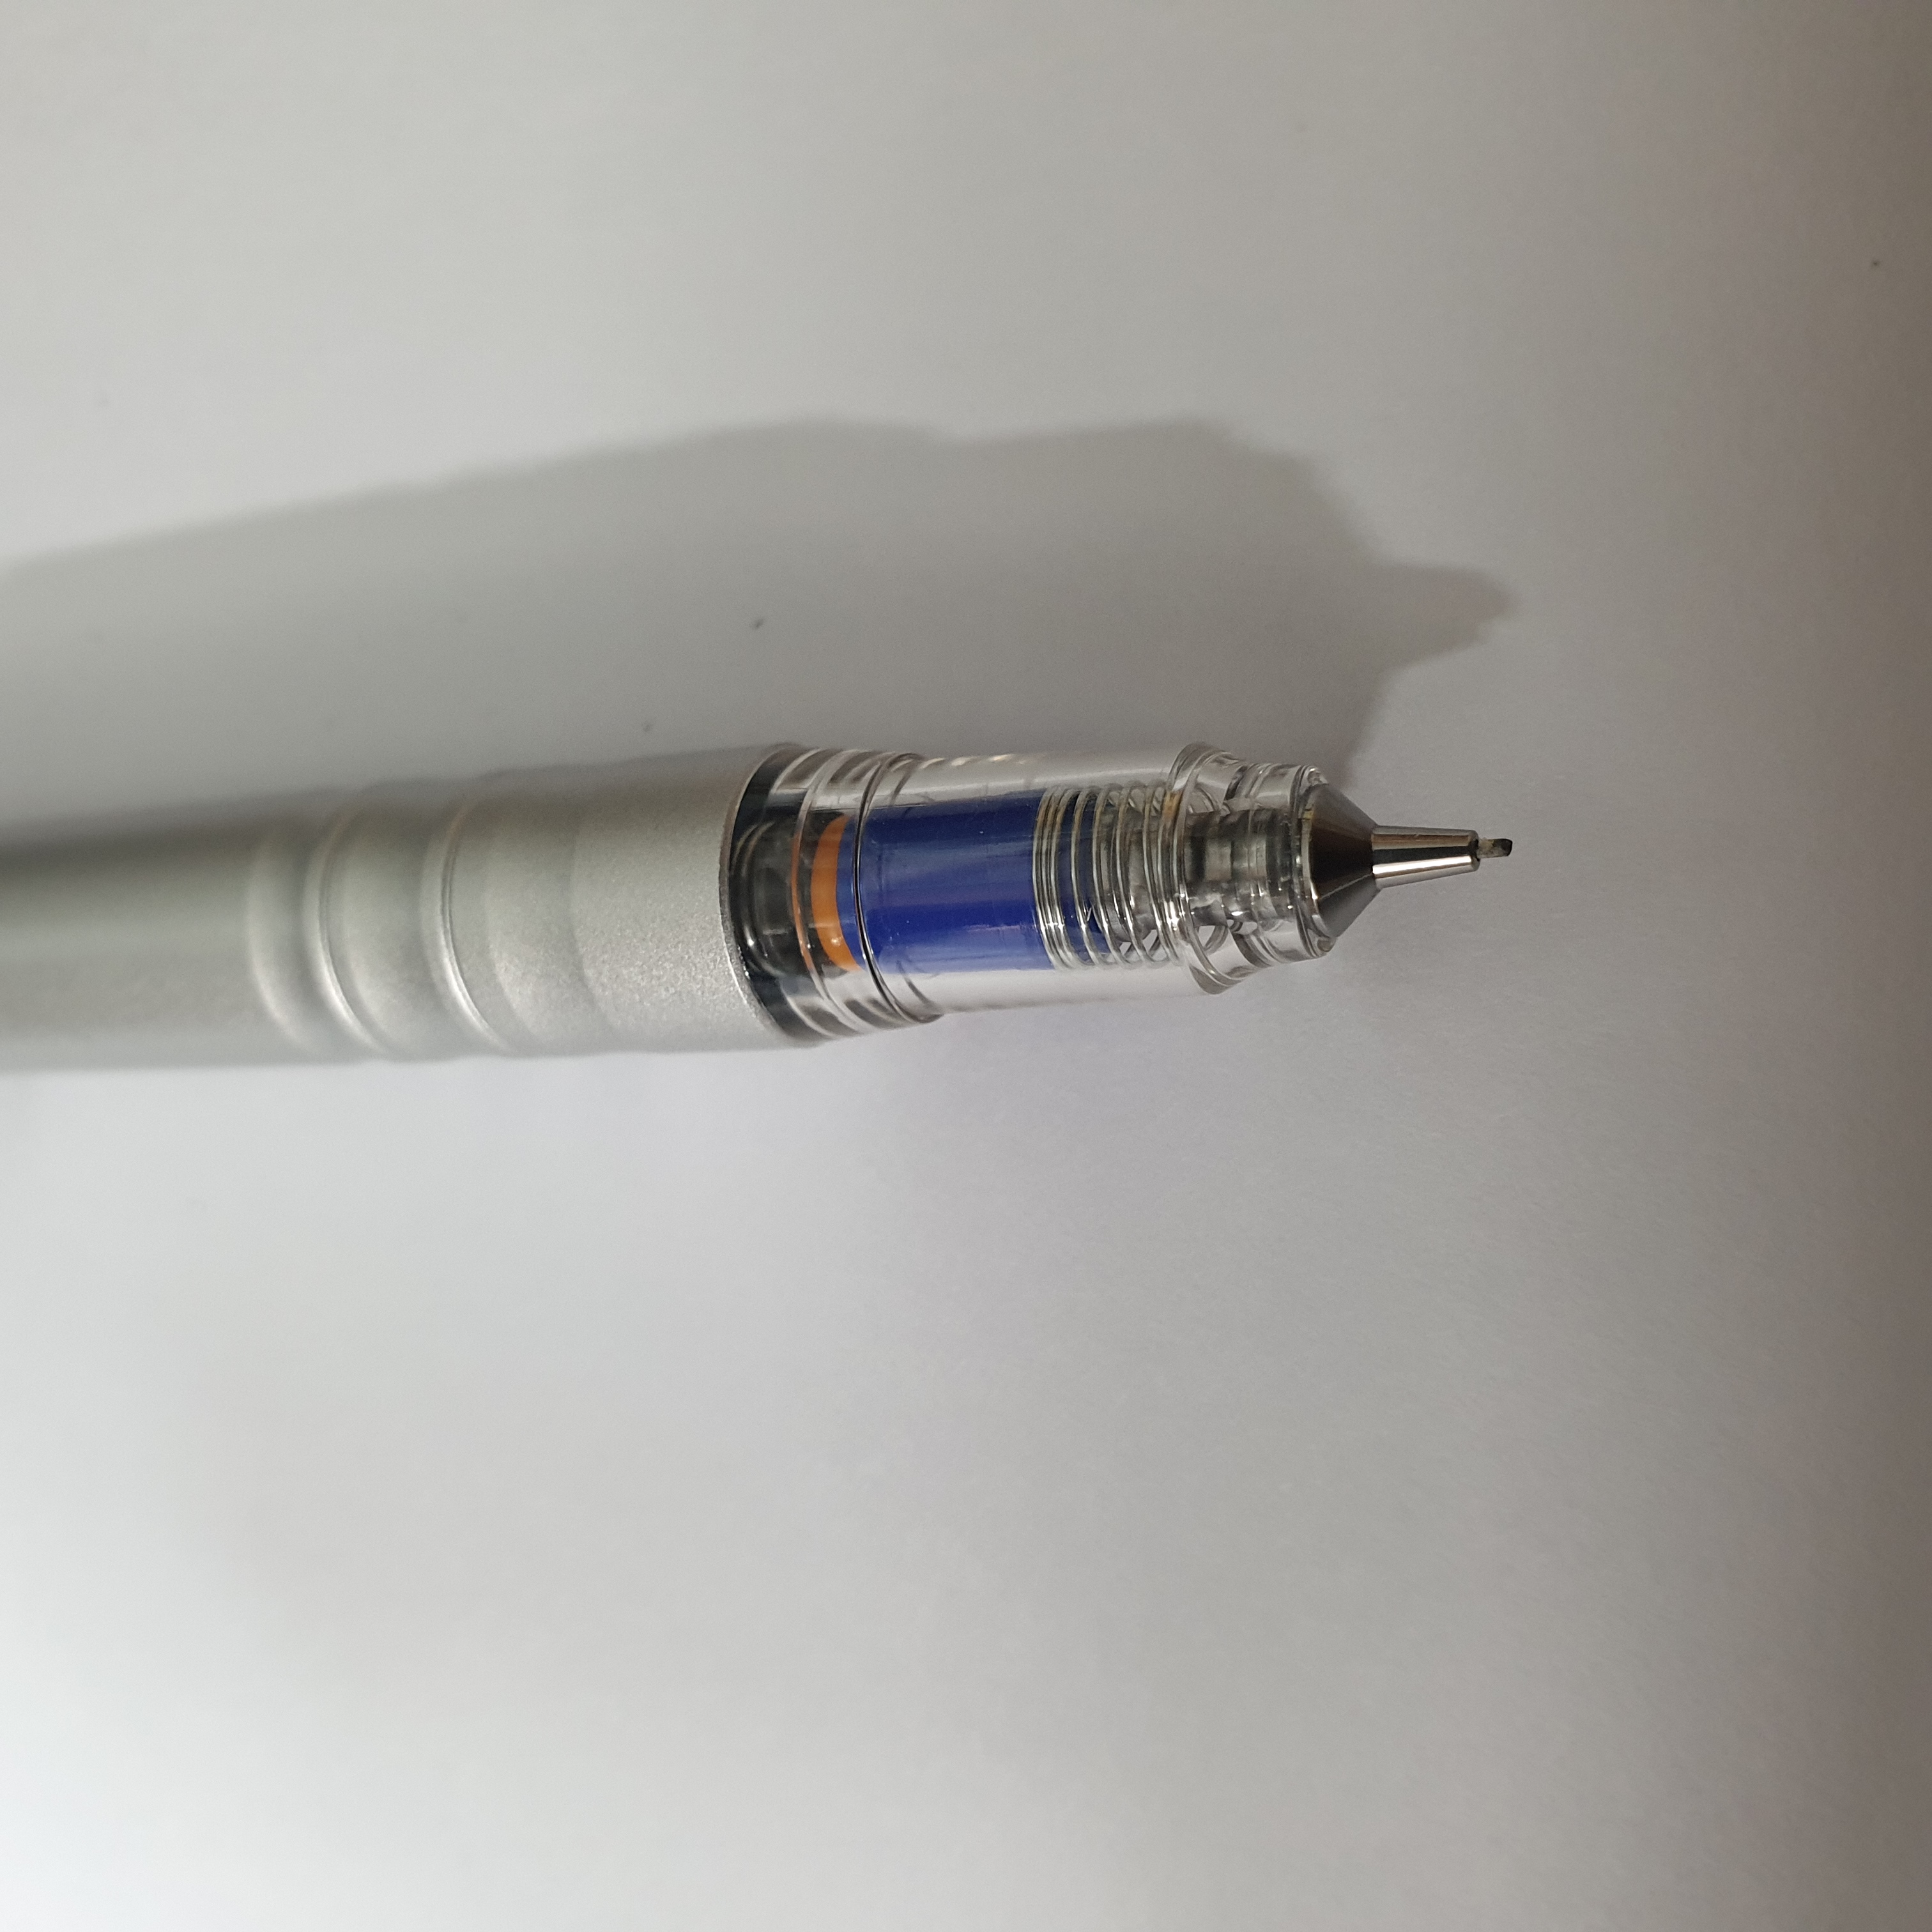 مداد نوکی 0.5 میلی متری زبرا مدل Delguard-lx